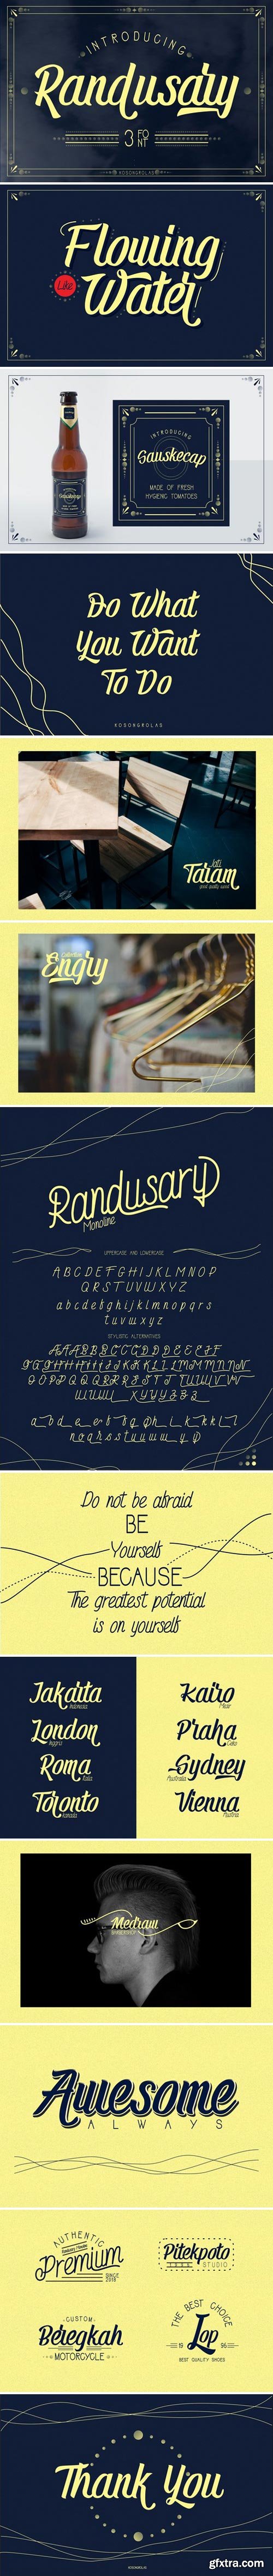 CM - Randusary Font Pack 3 Font 2255073